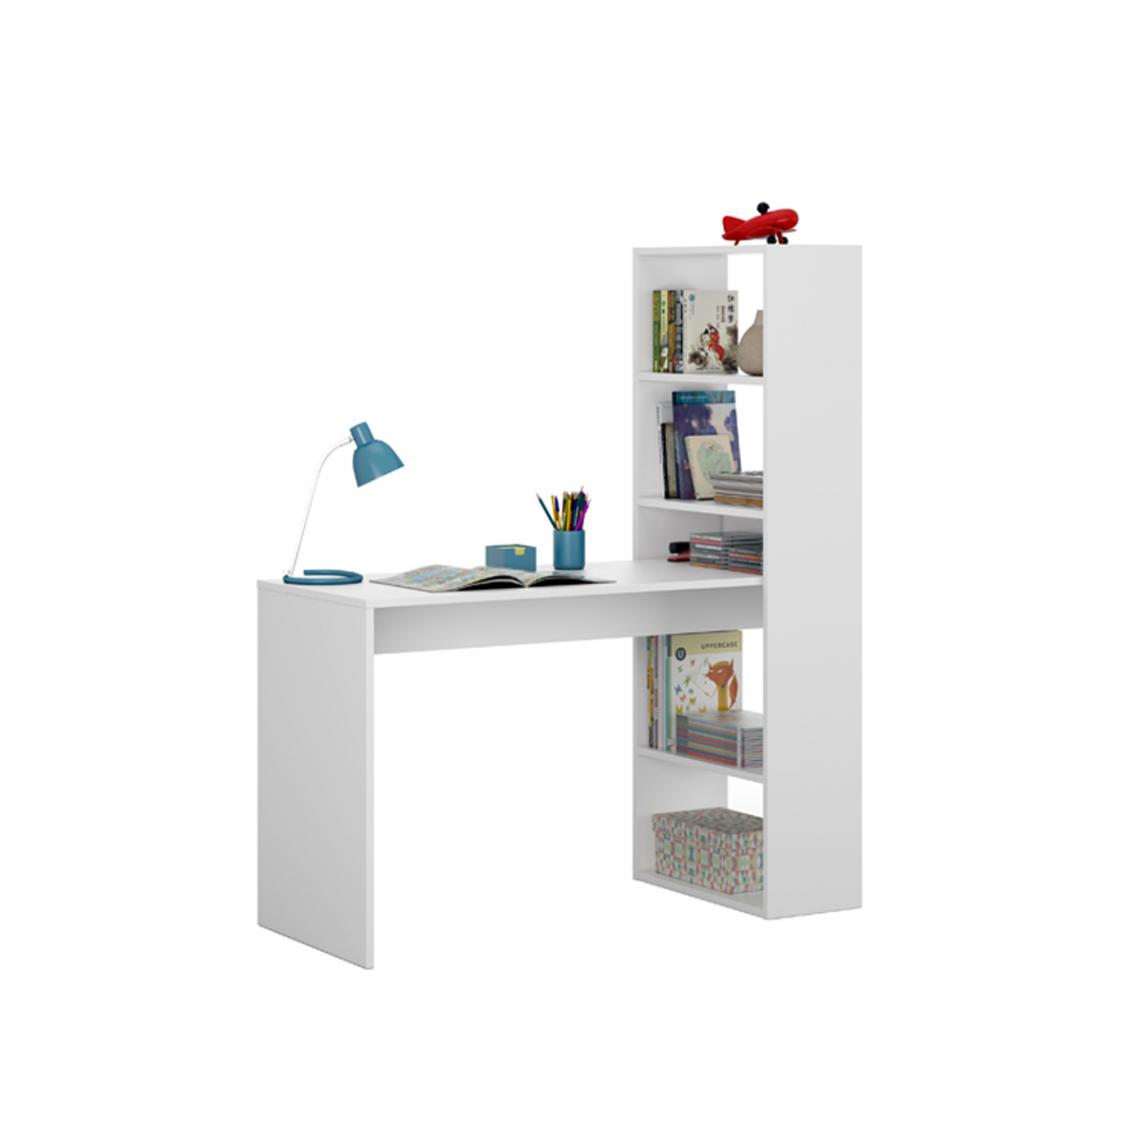 Pegane - Table de Bureau avec étagère réversible coloris Blanc Artik - longueur 120 cm x Profondeur 53 cm x Hauteur 144 cm - Bureaux